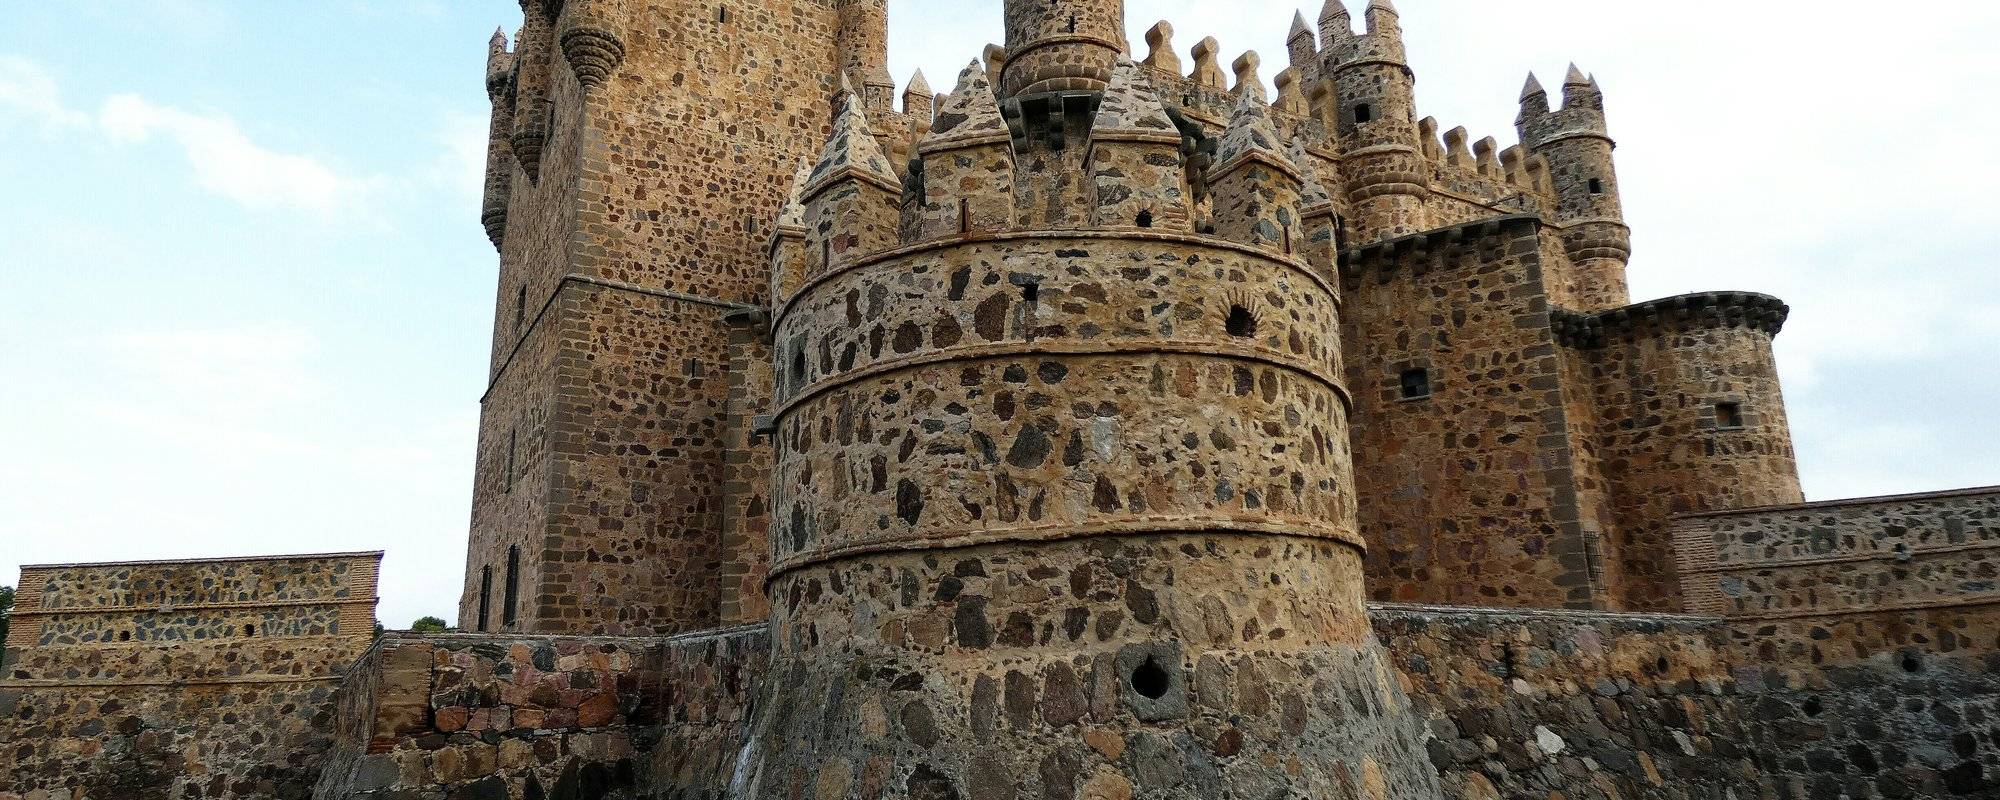 Castles of Spain, Guadamur  (Toledo)